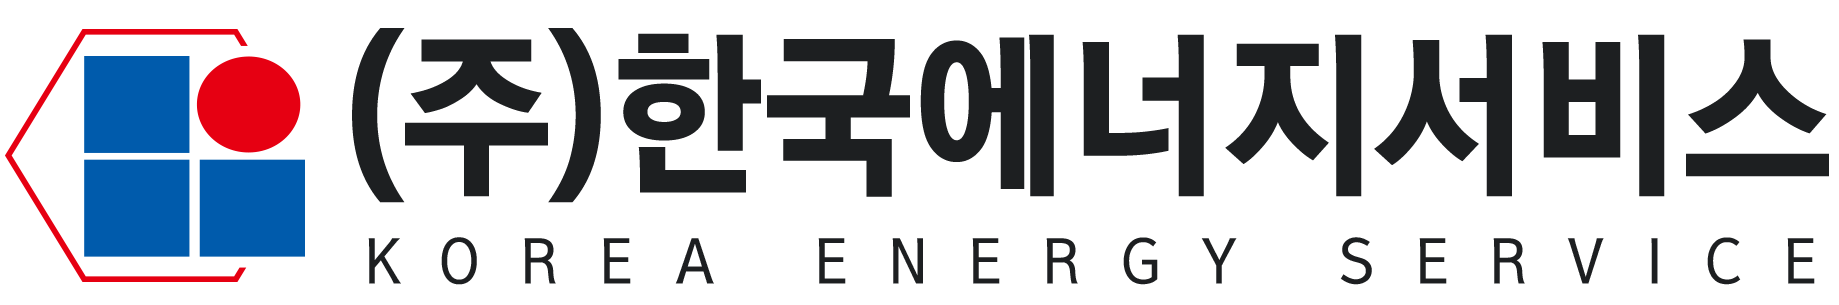 (주)한국에너지서비스의 기업로고